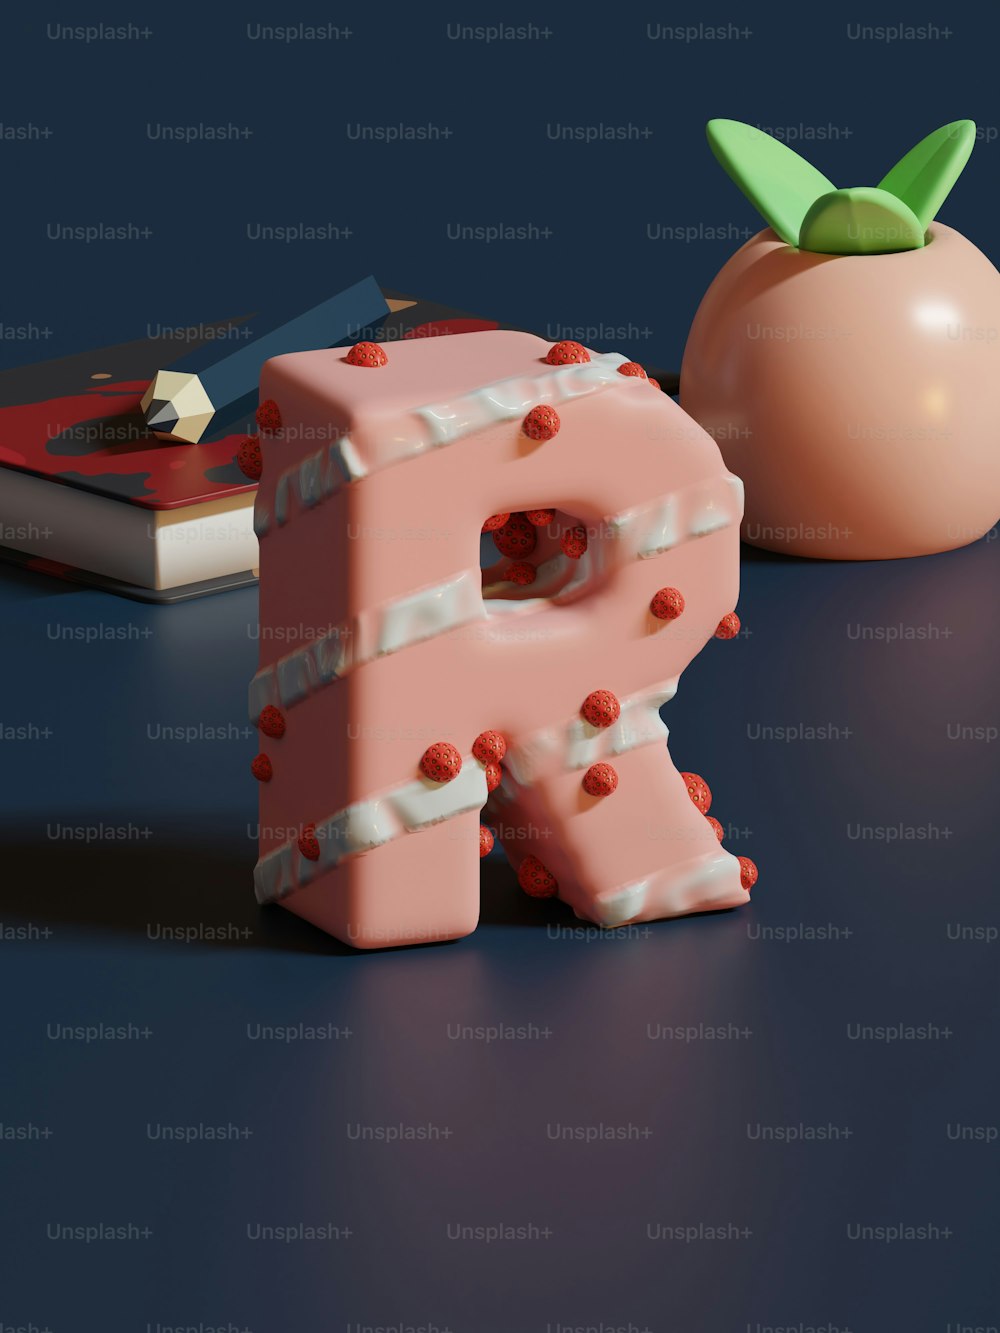 Ein rosa buchstabenförmiges Objekt neben einer Tomate